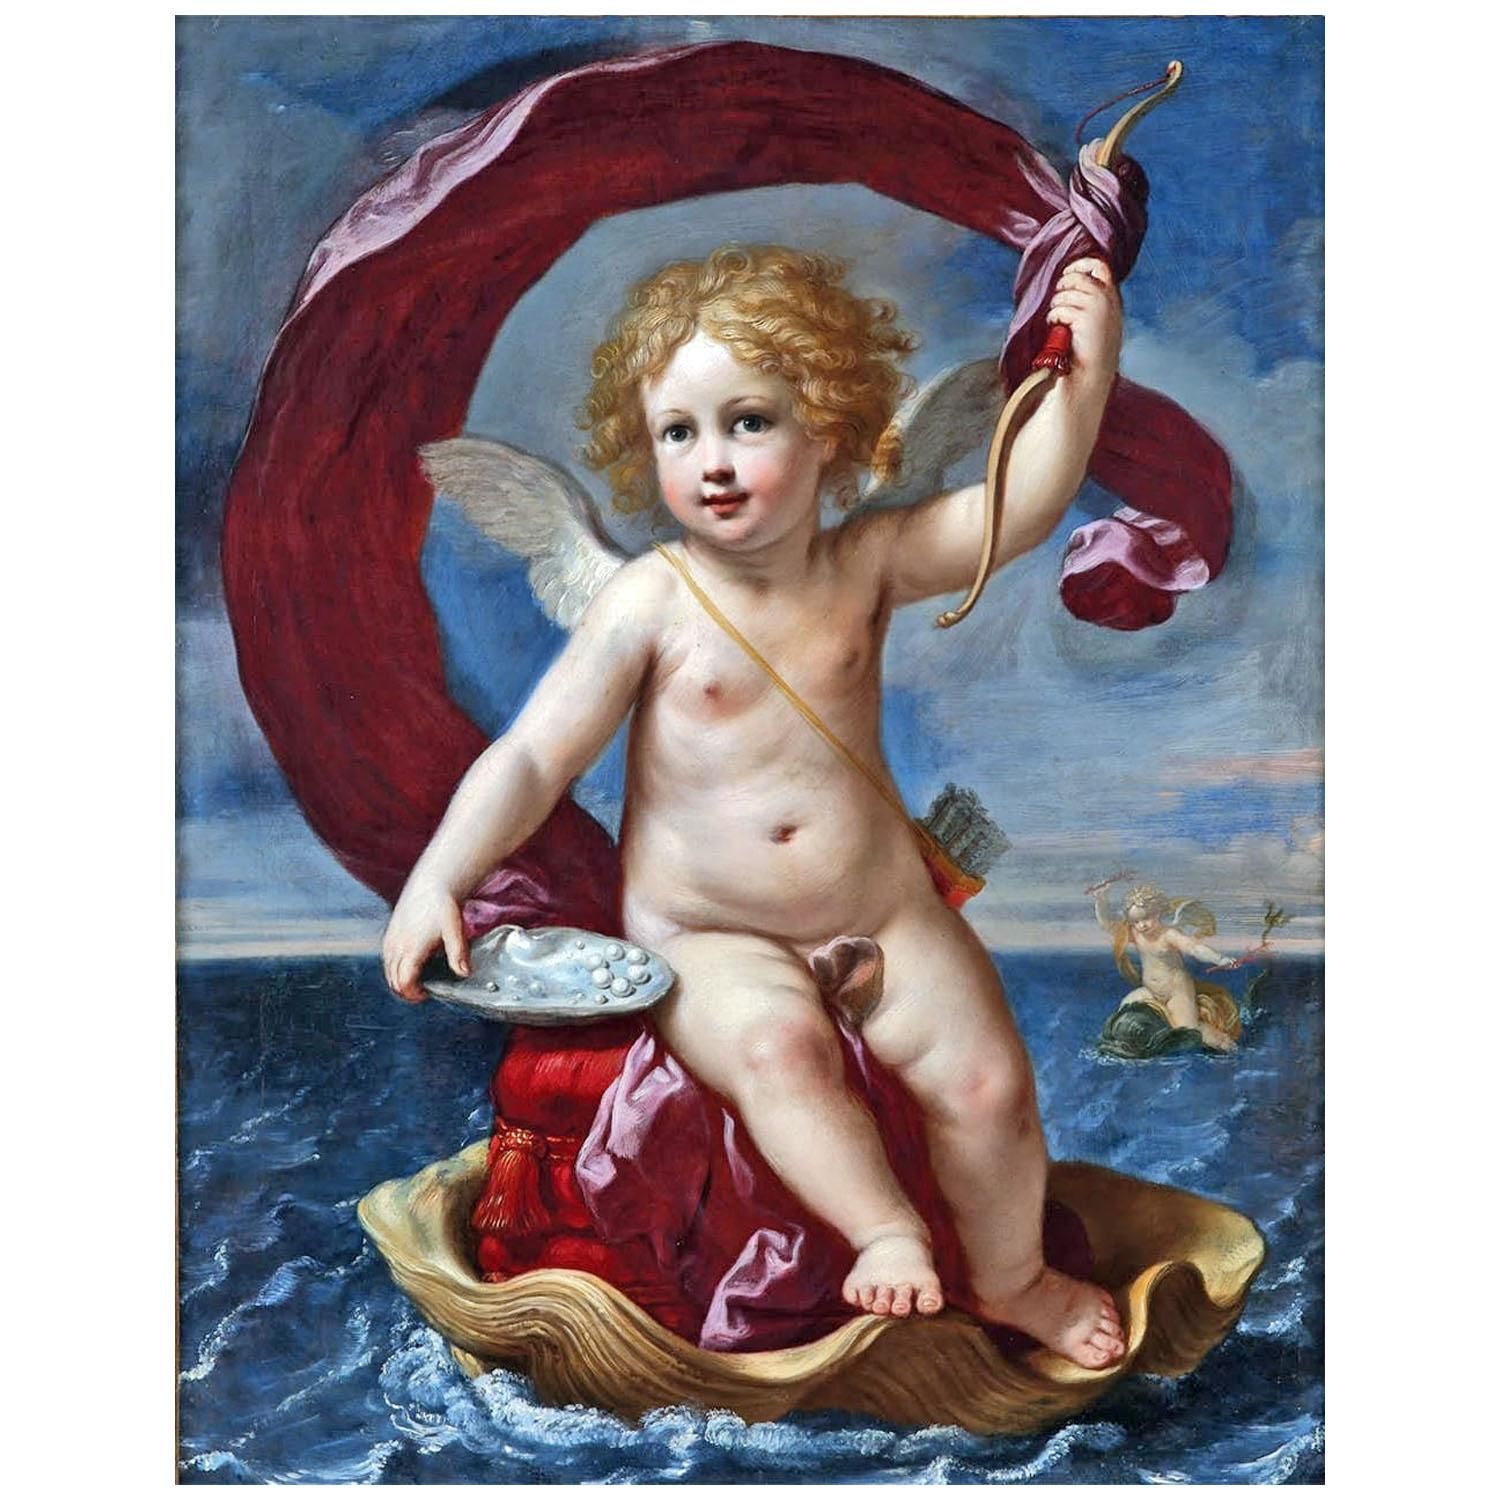 Elisabetta Sirani. Medici Cupid. 1661. Galleria degli Uffizi